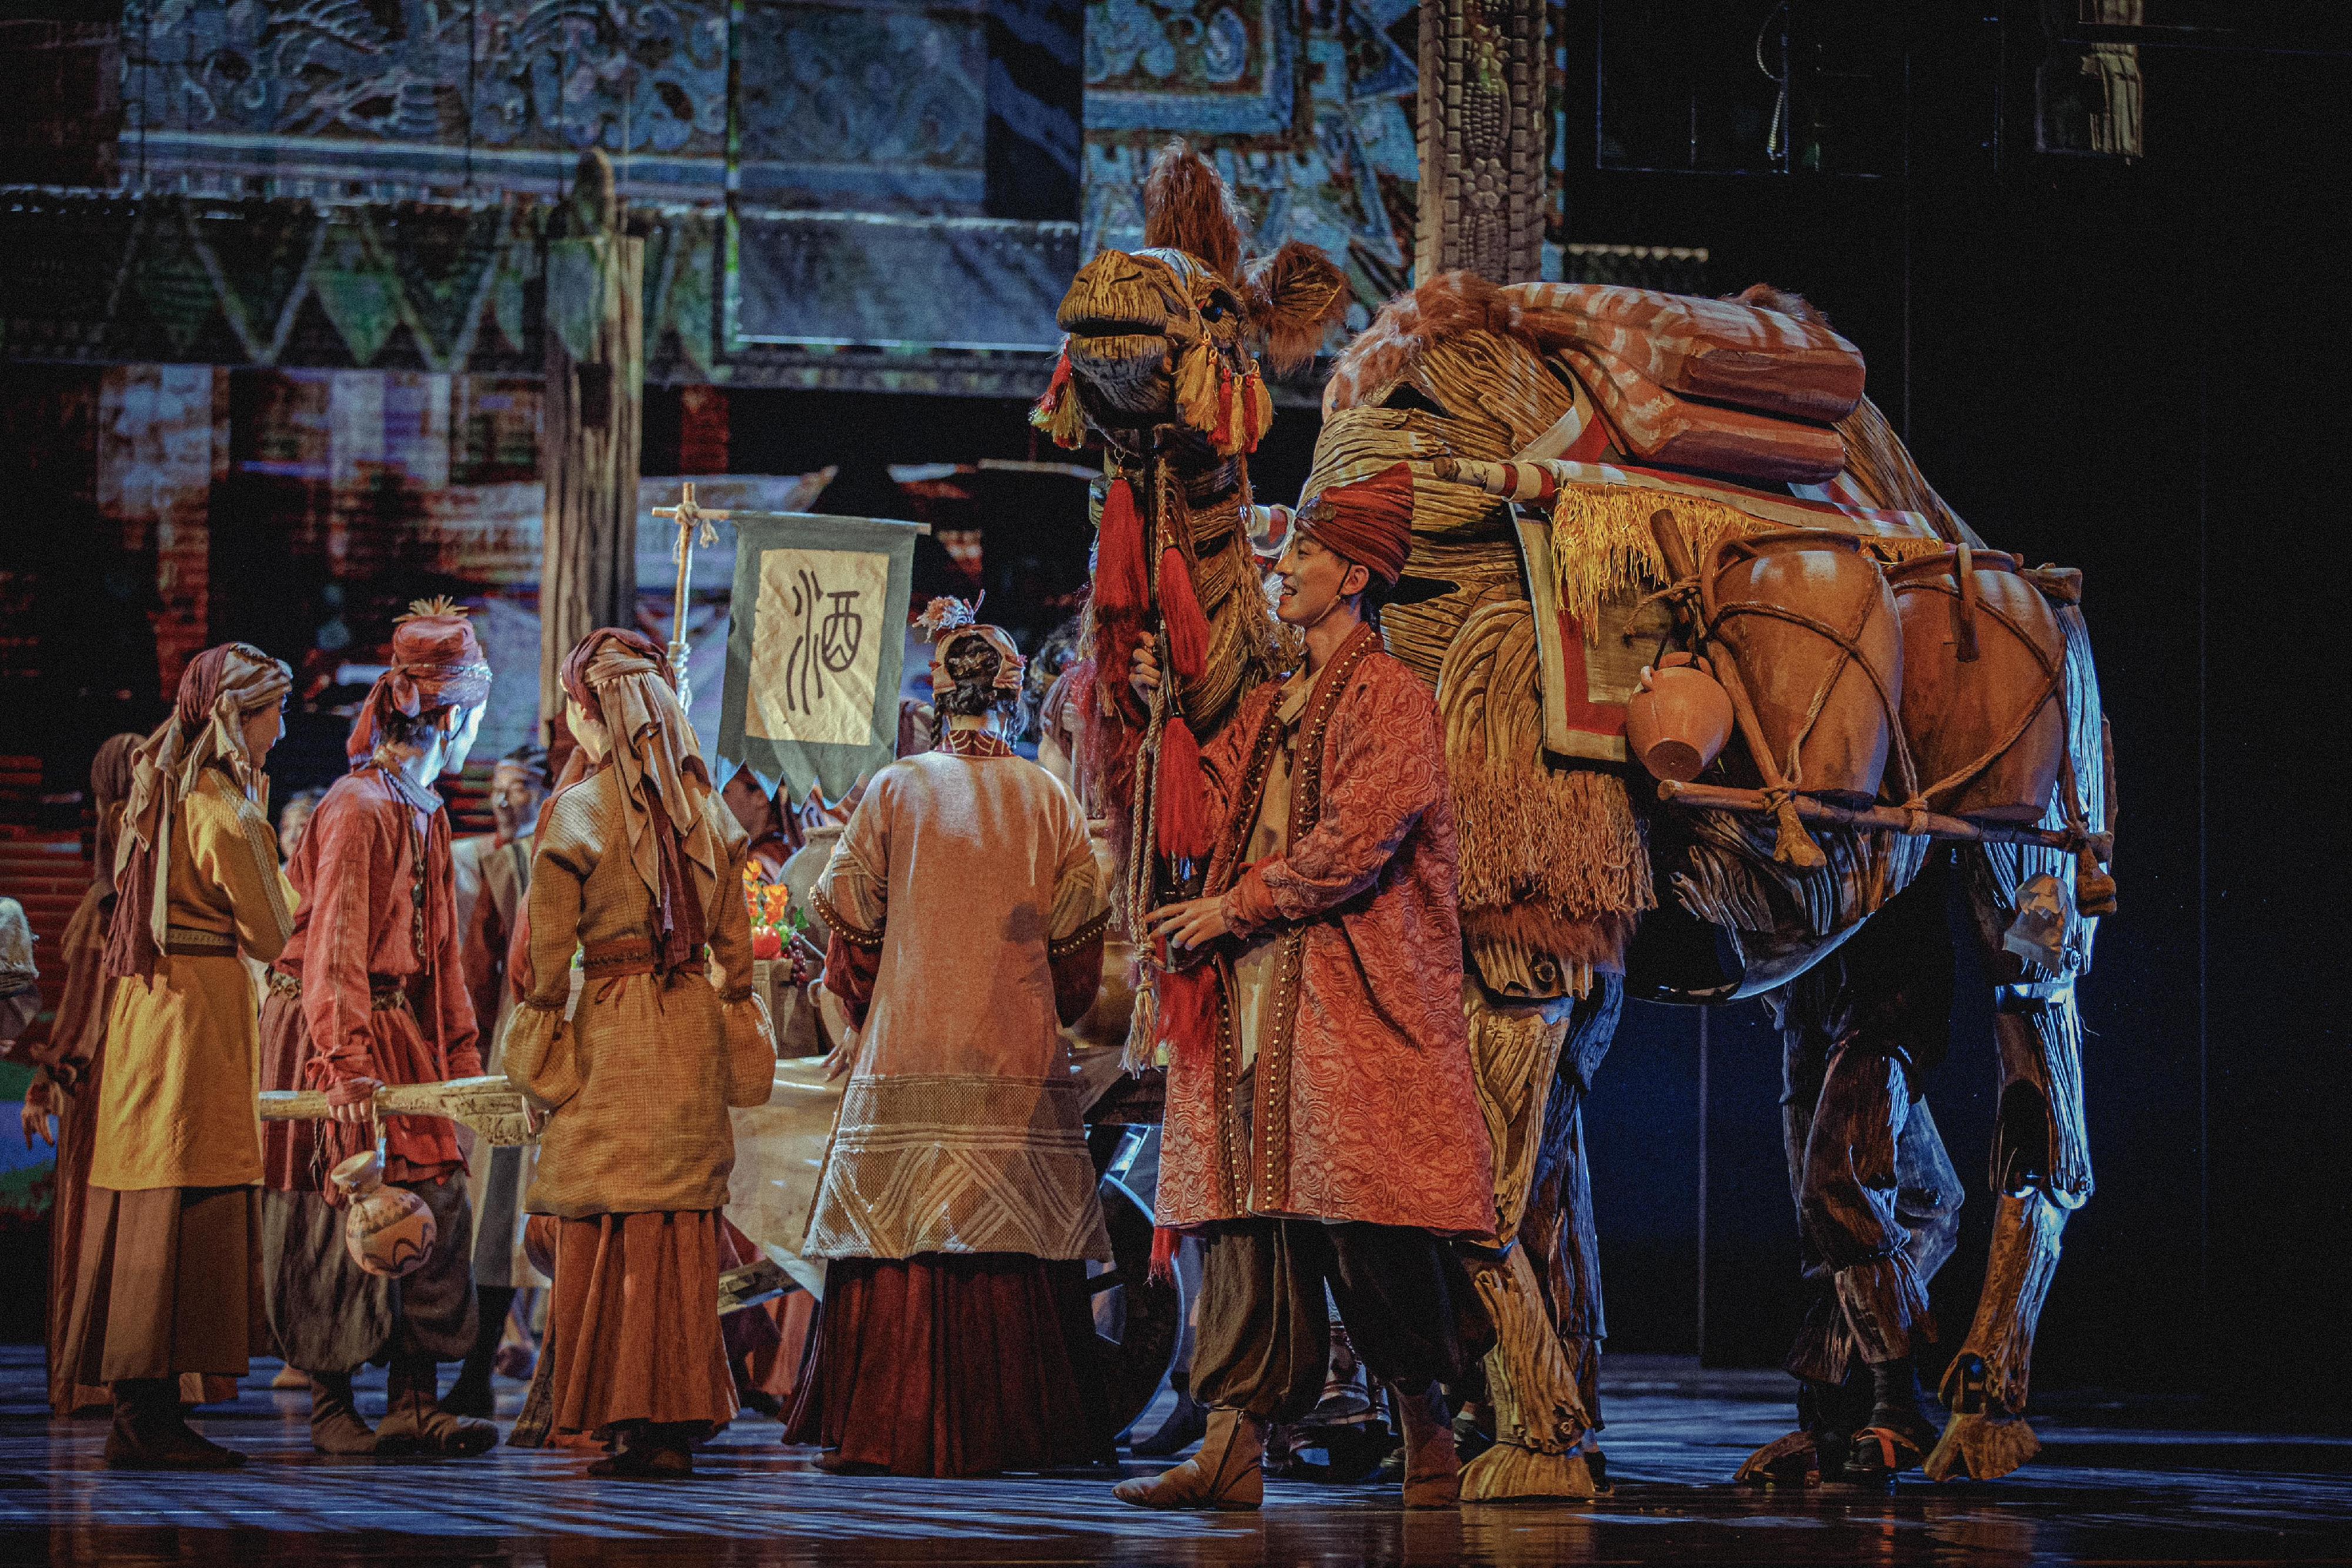 首届中华文化节开幕节目——北京歌剧舞剧院：舞剧《五星出东方》六月在香港公演。图示舞剧《五星出东方》剧照。